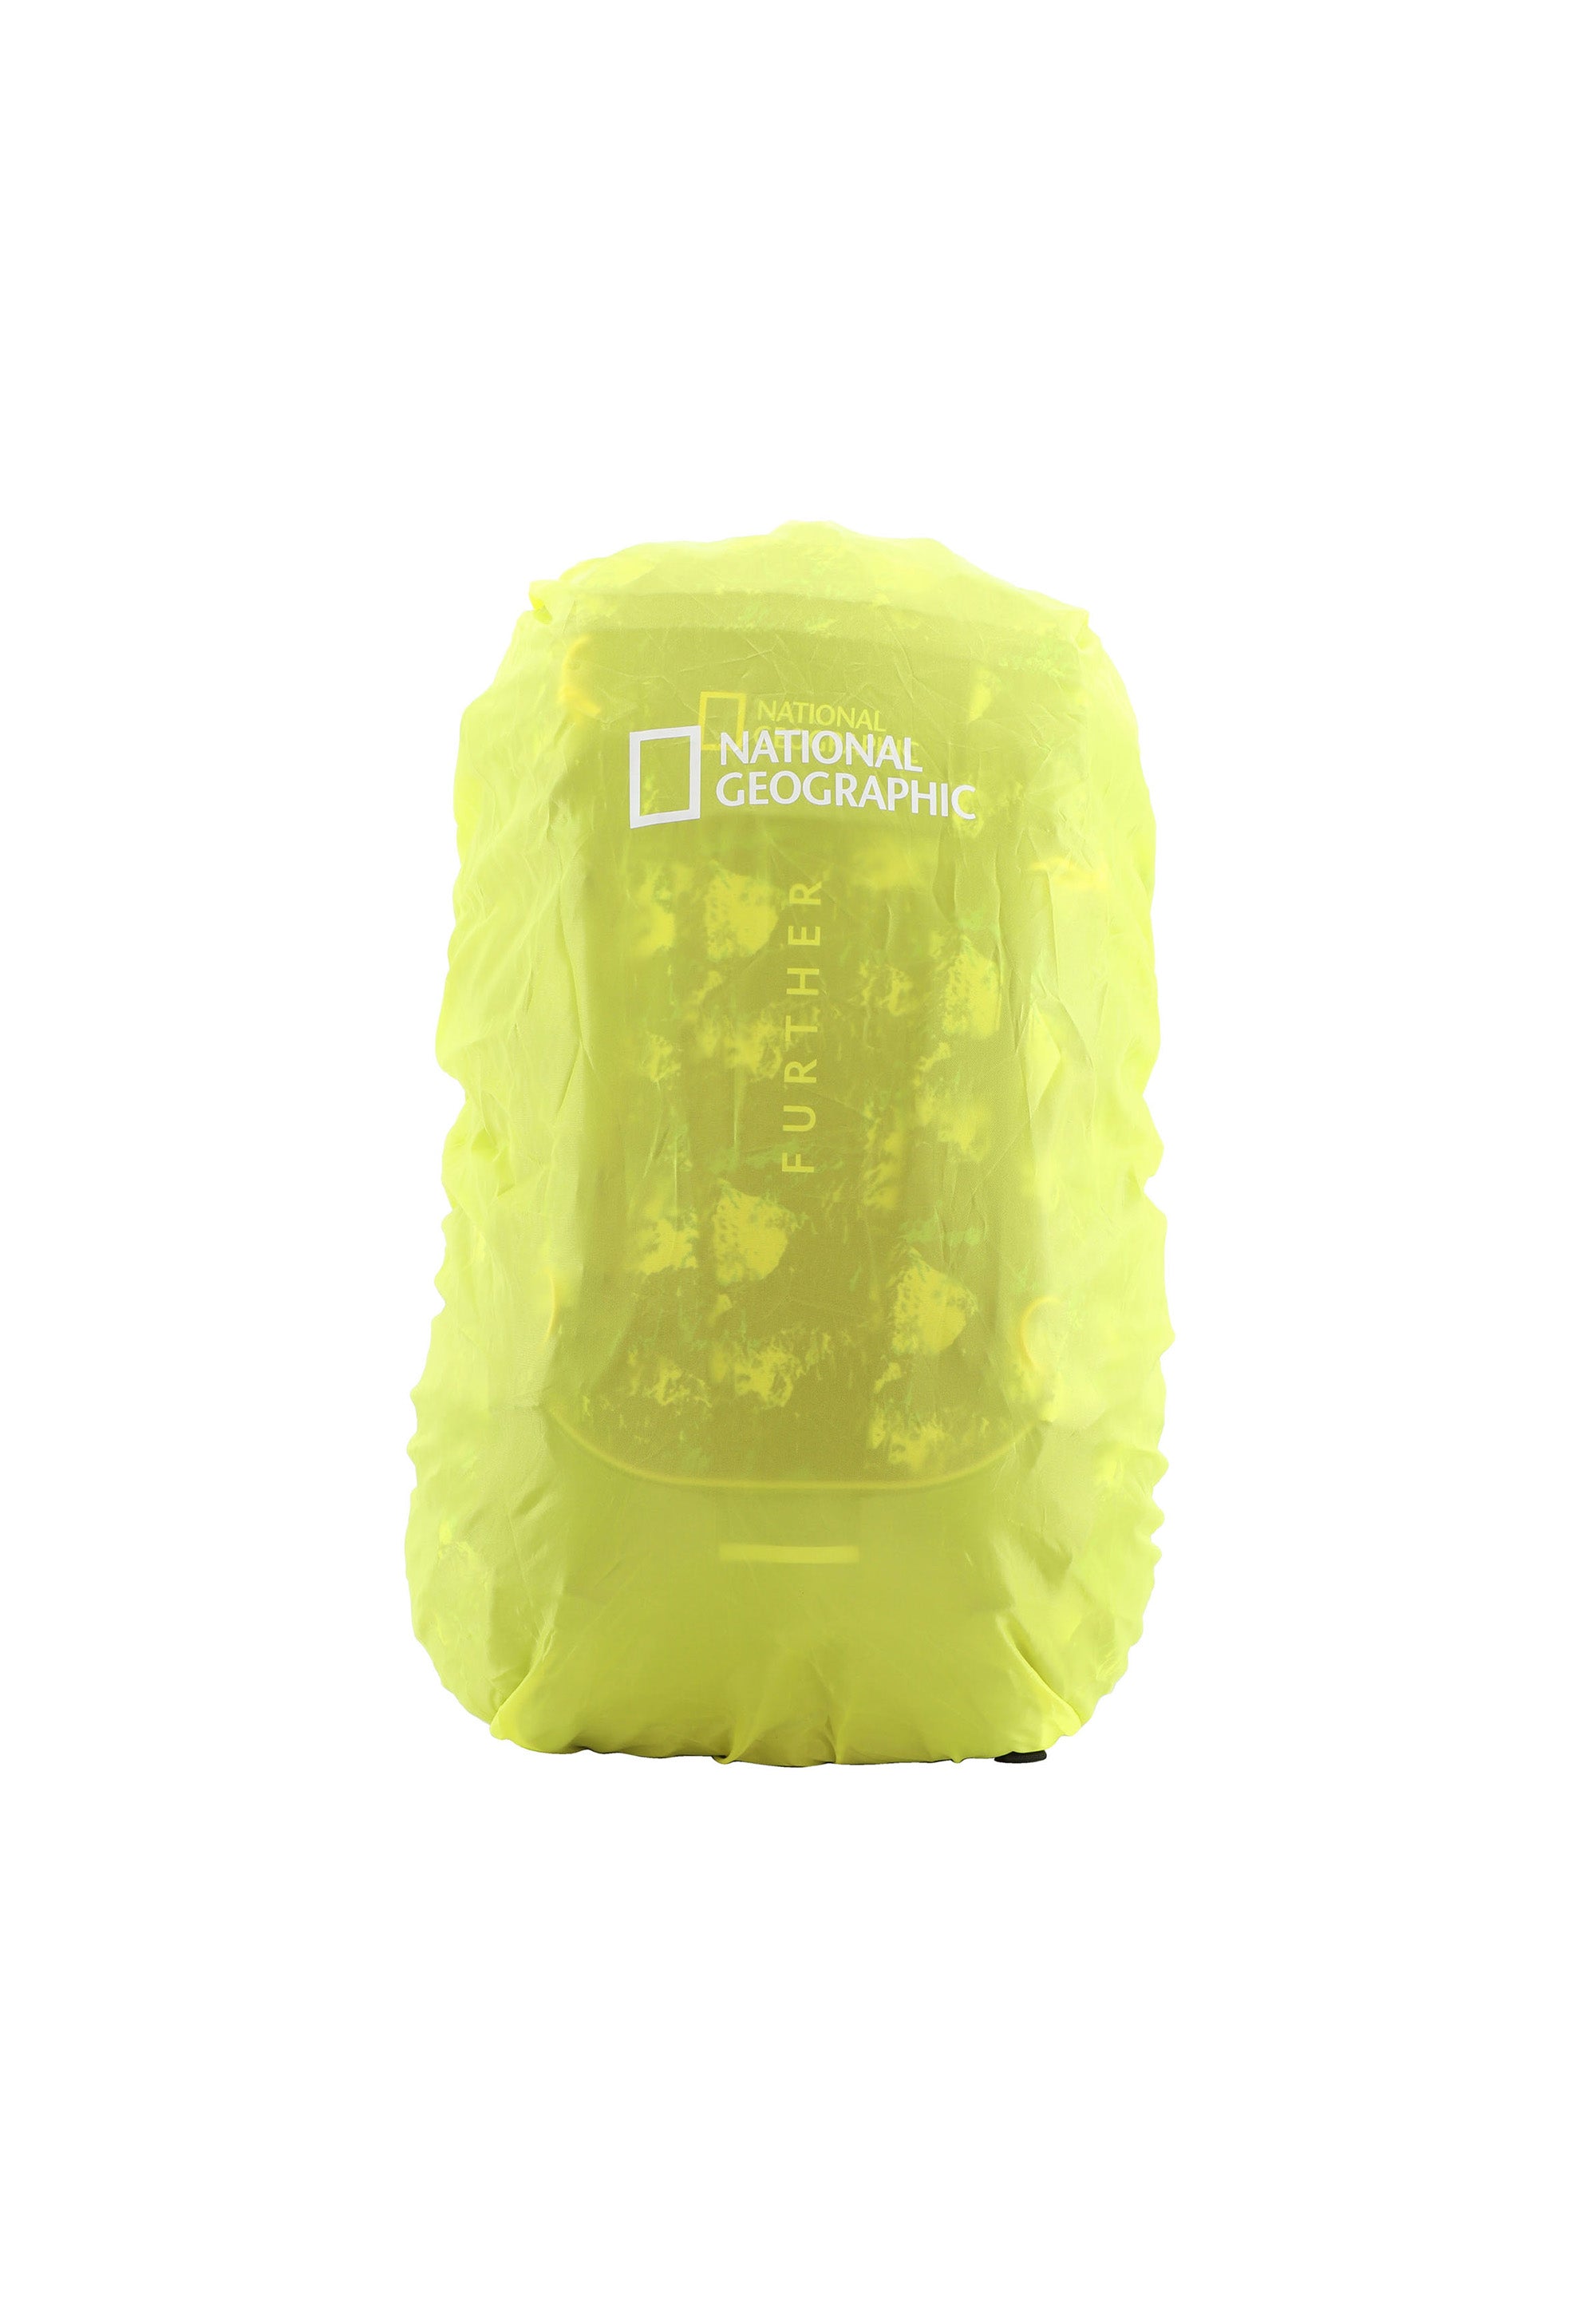 National Geographic - Destination Outdoor Rucksack mit RFID-Blocker (58cm) | Blau